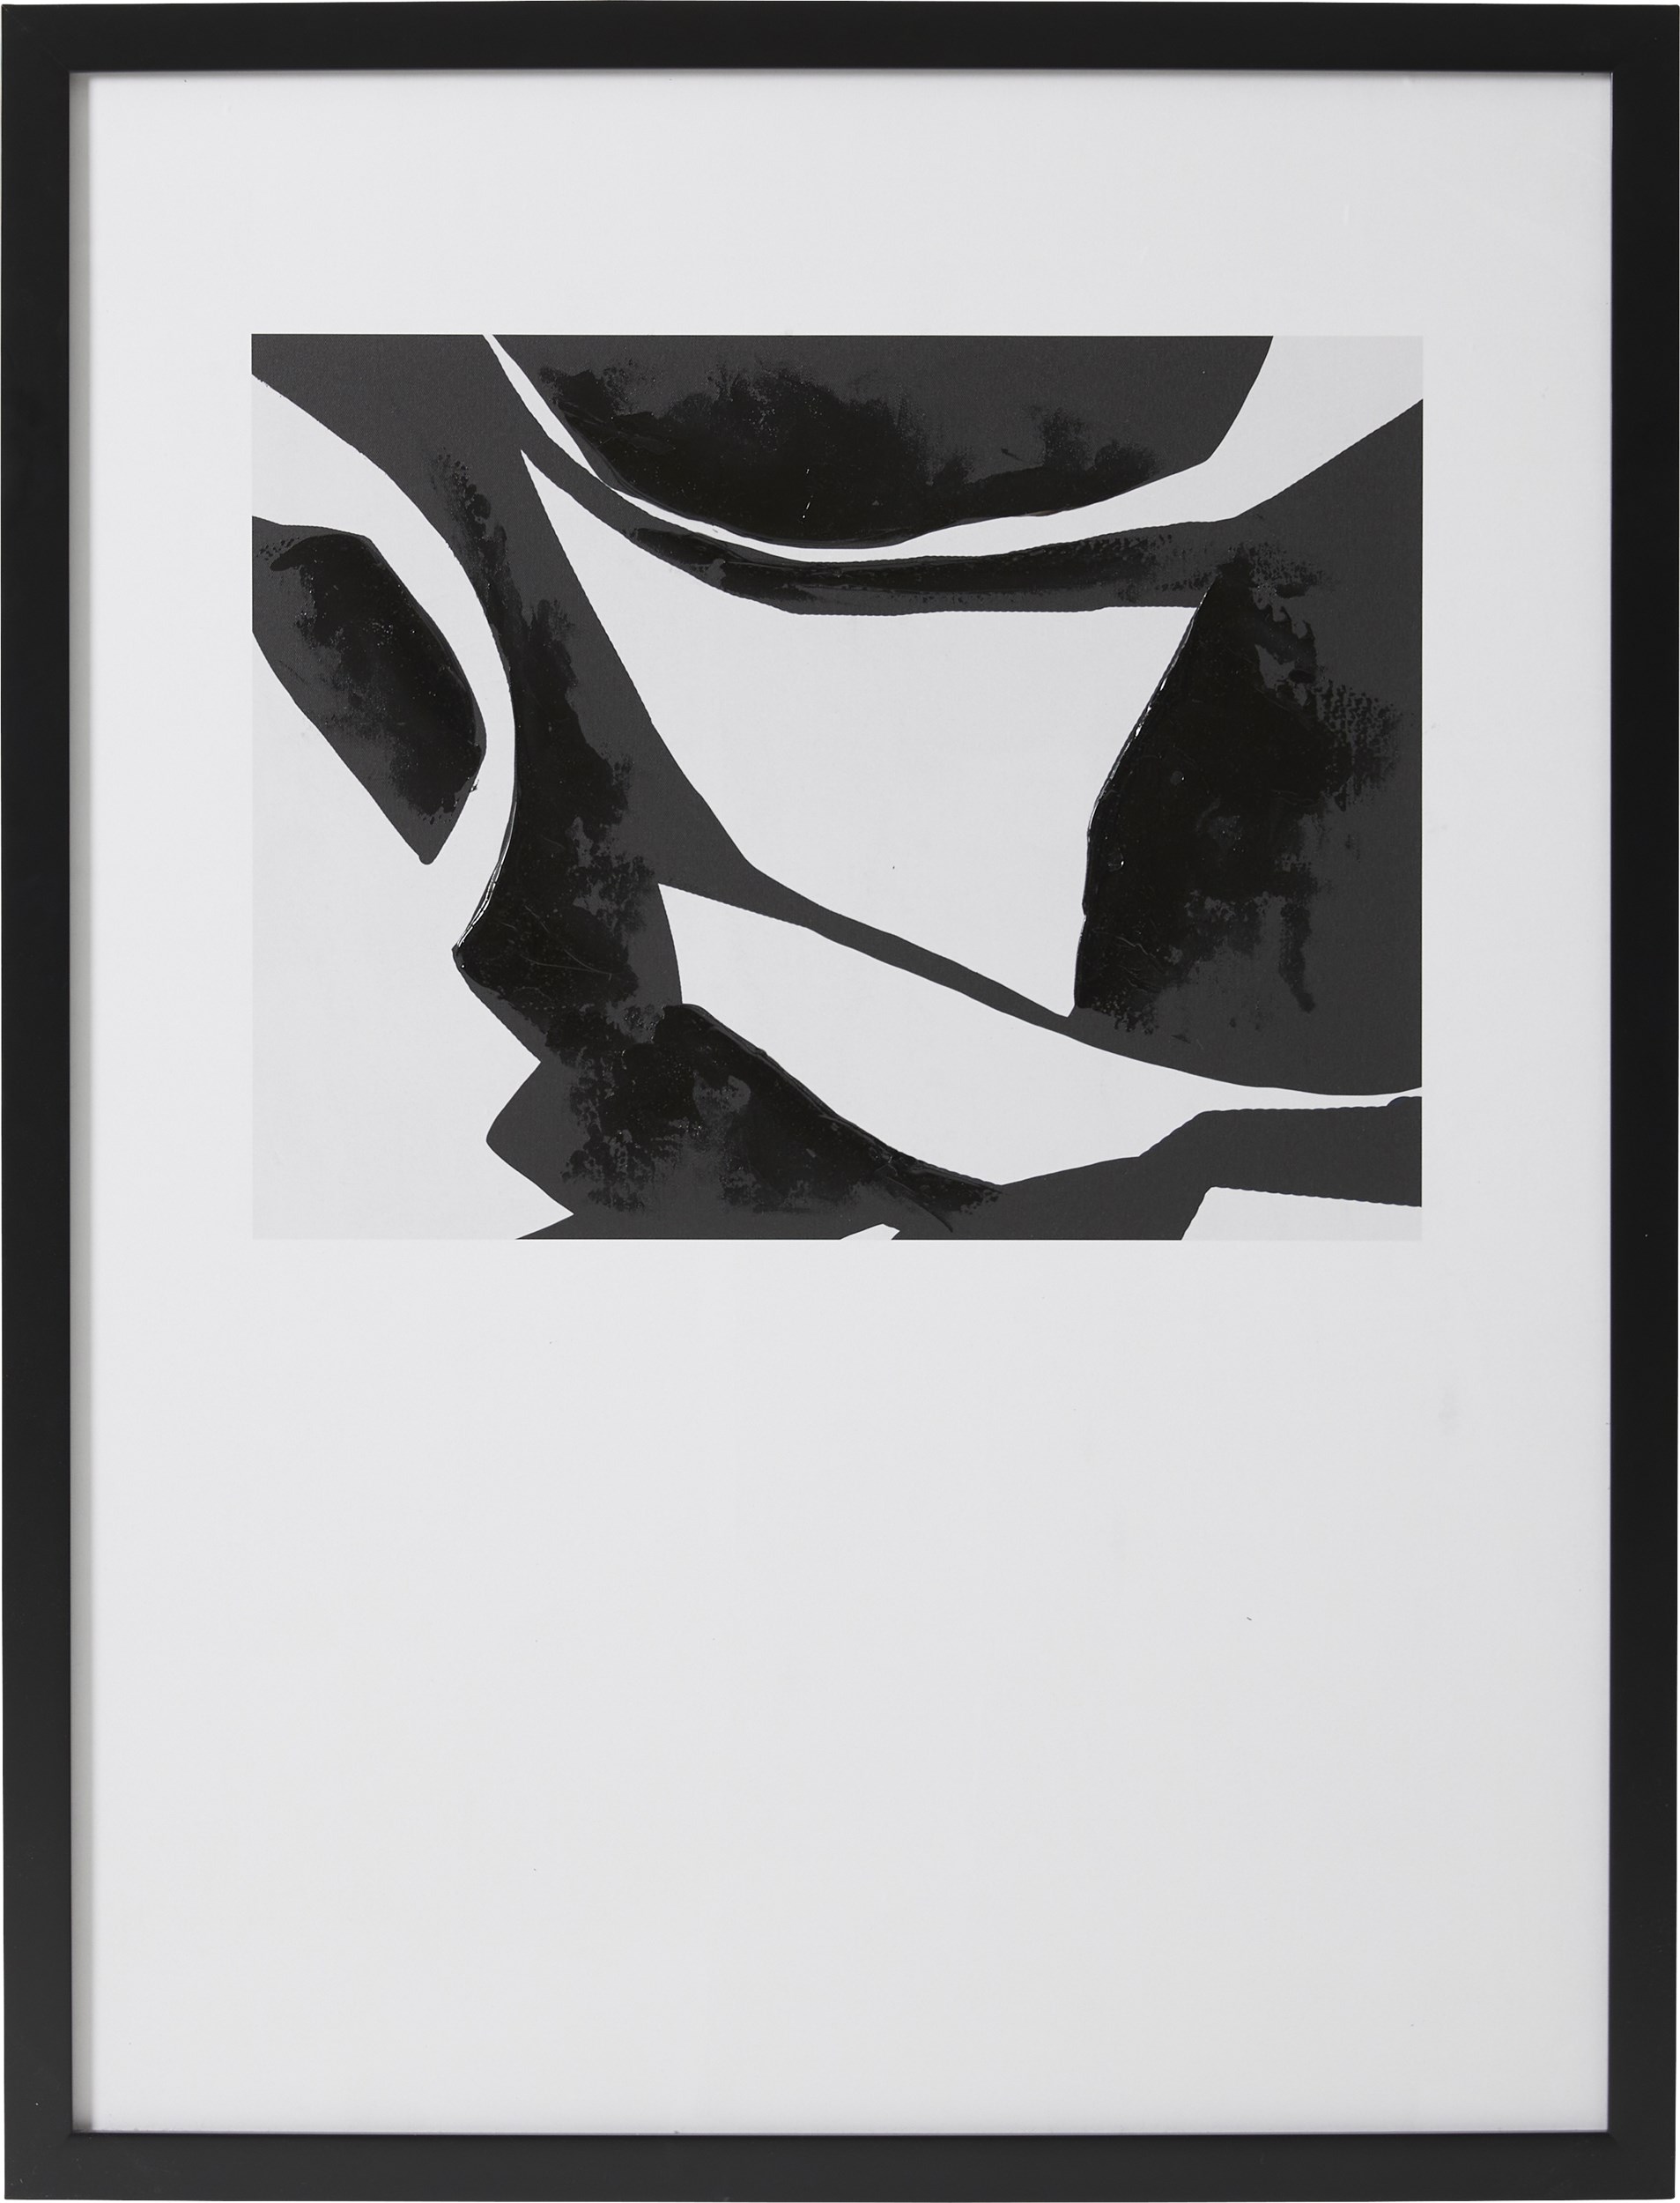 Eydis Fotoprint 126,6 x 96,6 x 3,5 cm 